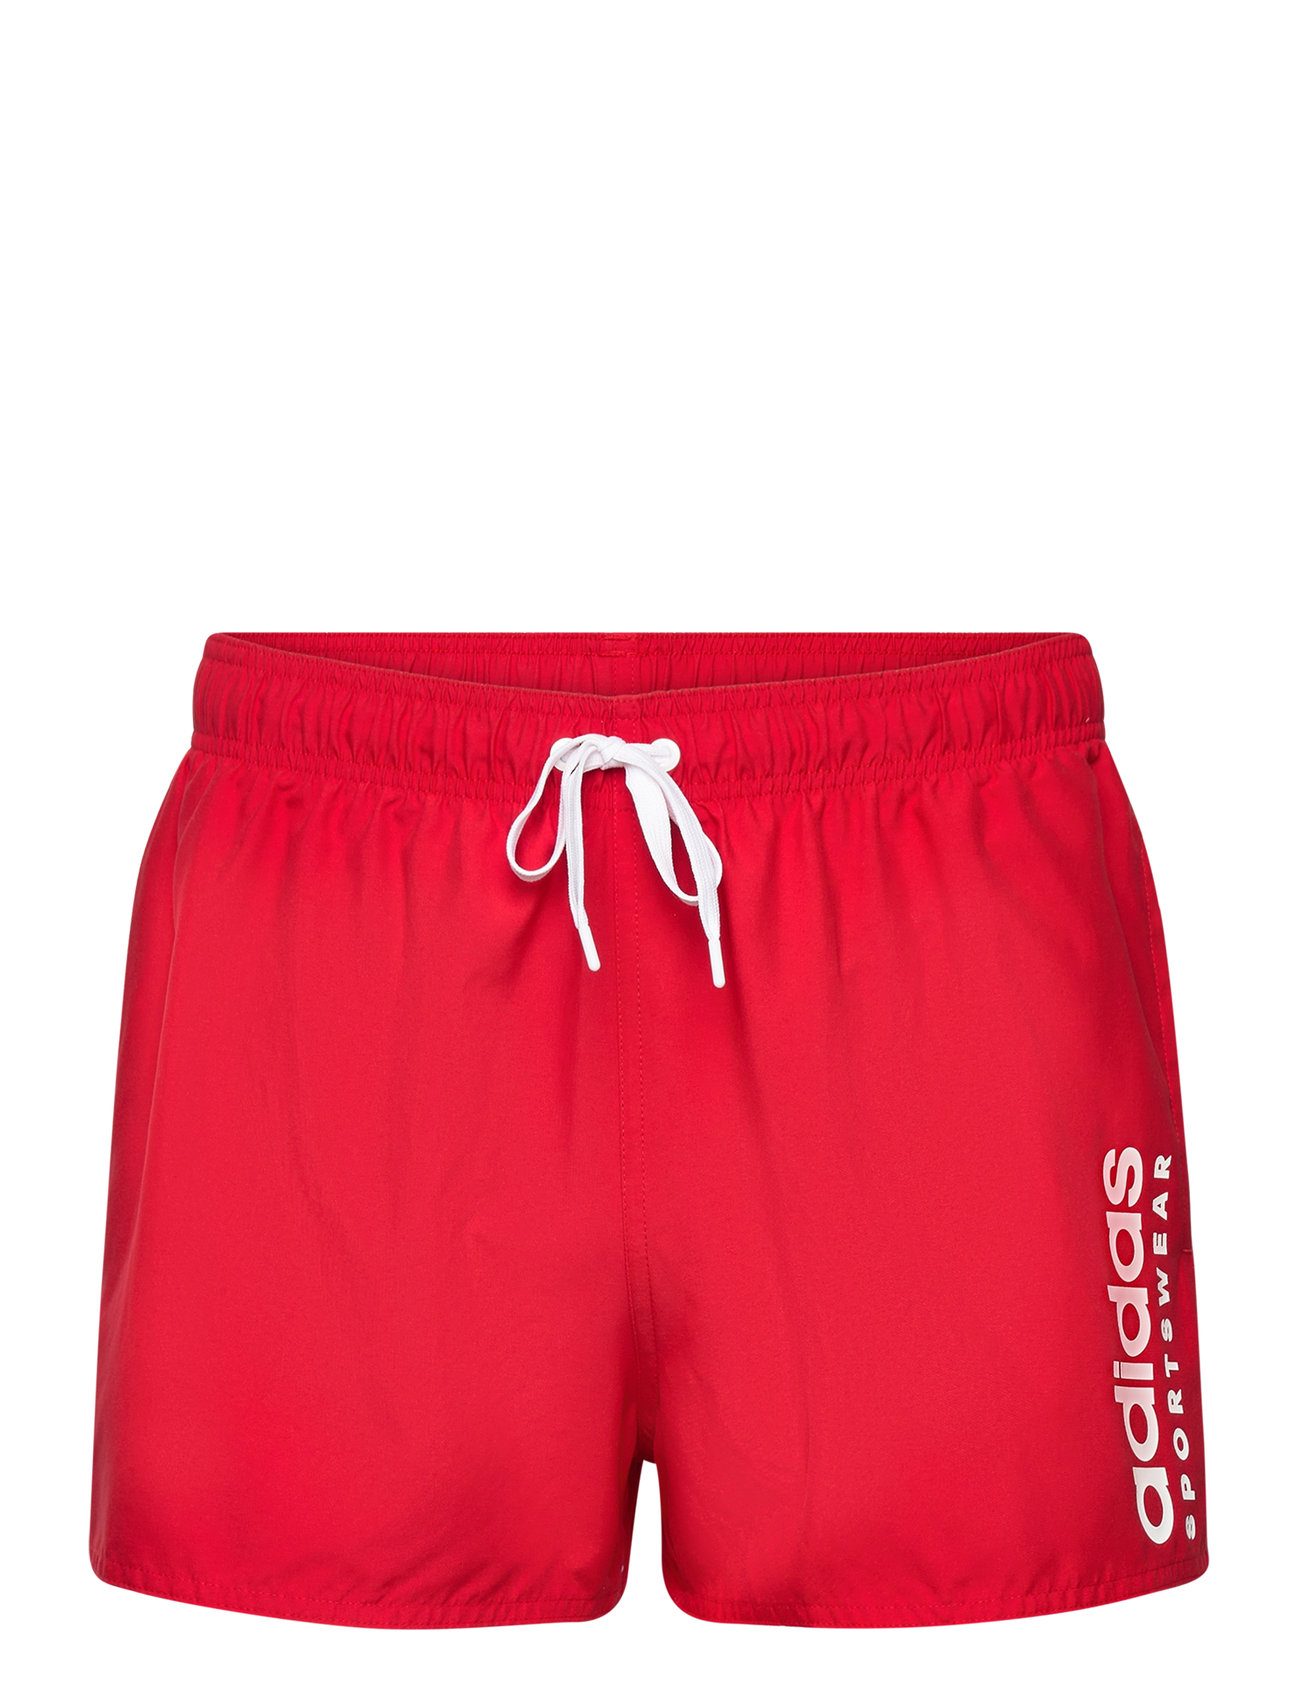 Ess L Clx Vsl Sport Shorts Red Adidas Sportswear